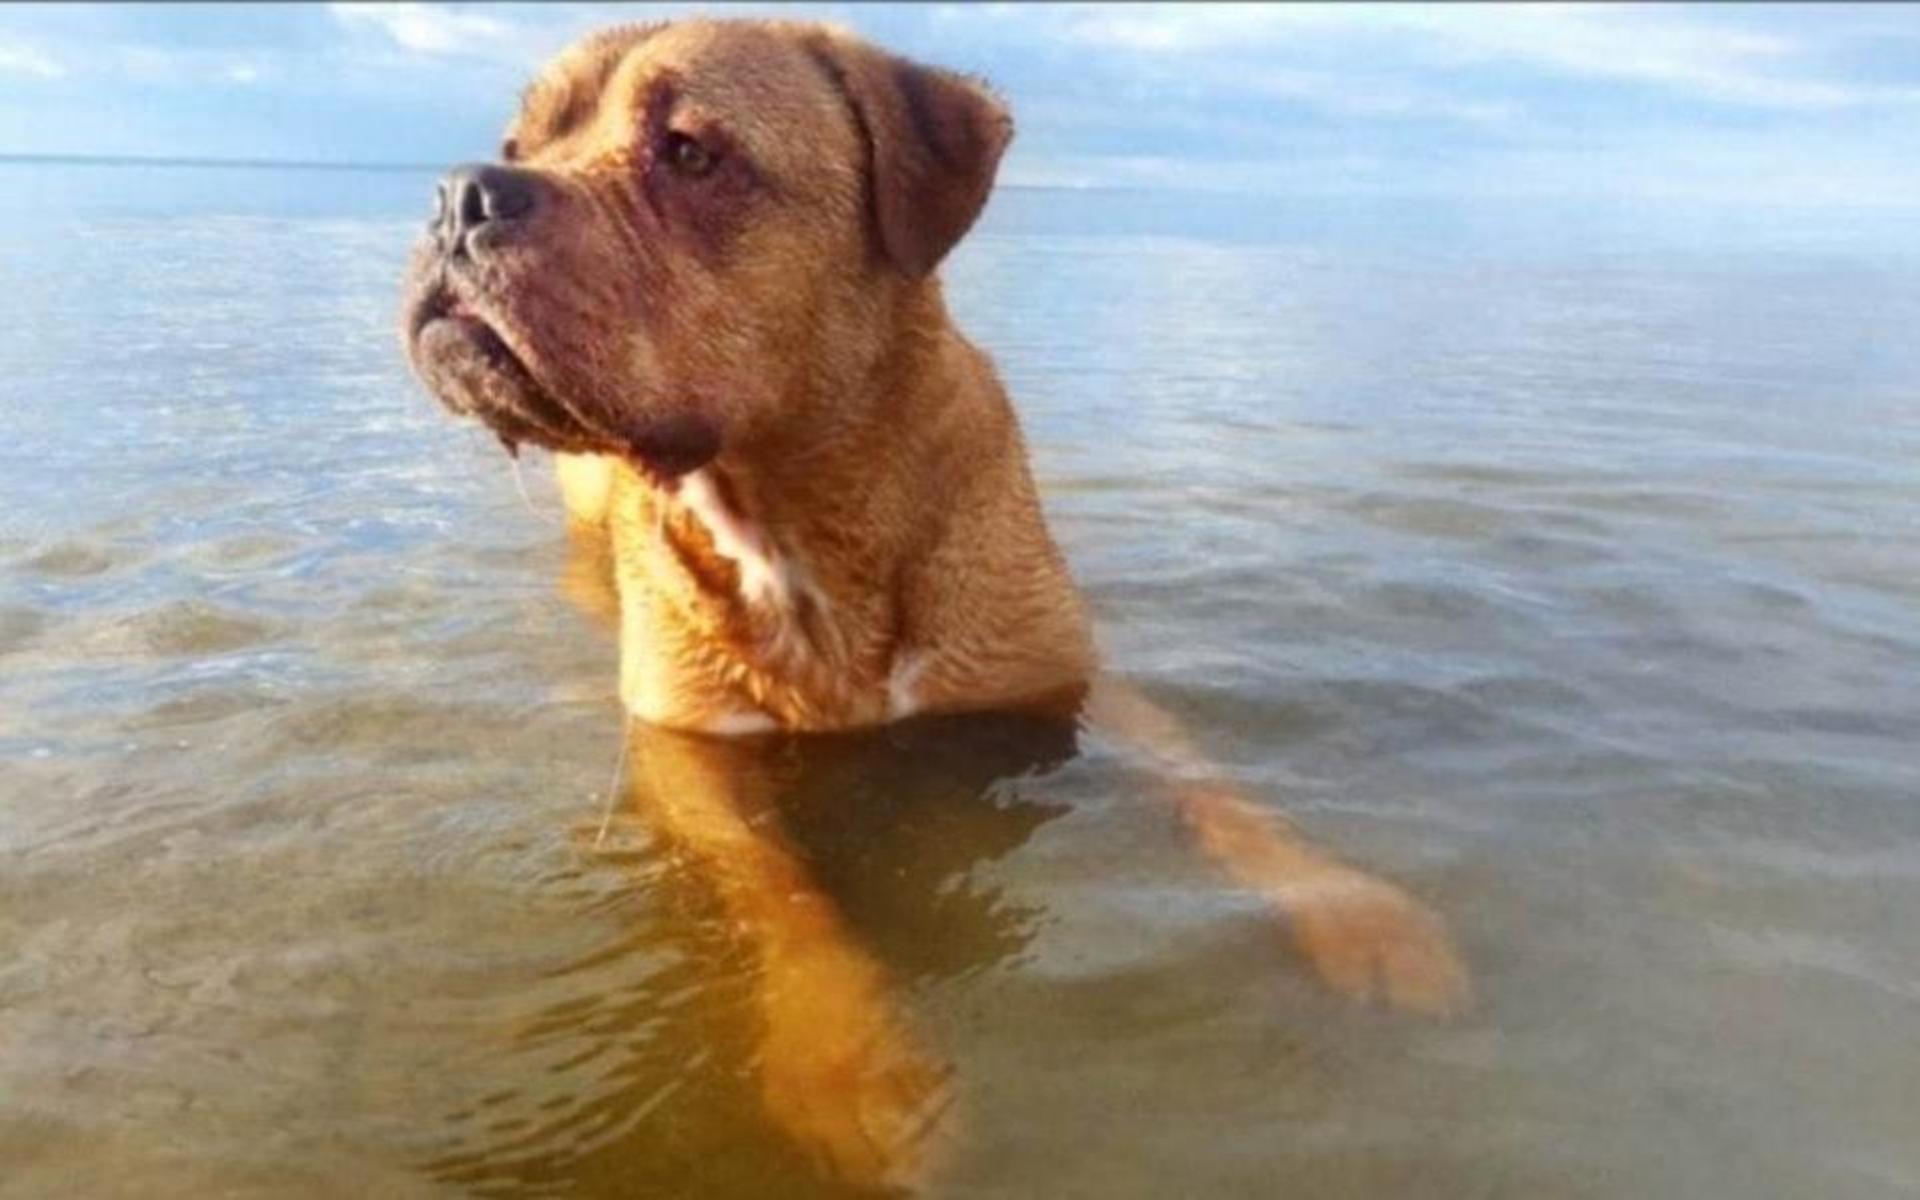 Johanna Johansson har skickat in en somrig bild på sin hund: ”Killen som älskar vatten. Det här är Alfons som är 7 år gammal (1år i sinnet). Han är en fransk mastiff/amstaff, han var ett vattendjur i sitt förra liv”.